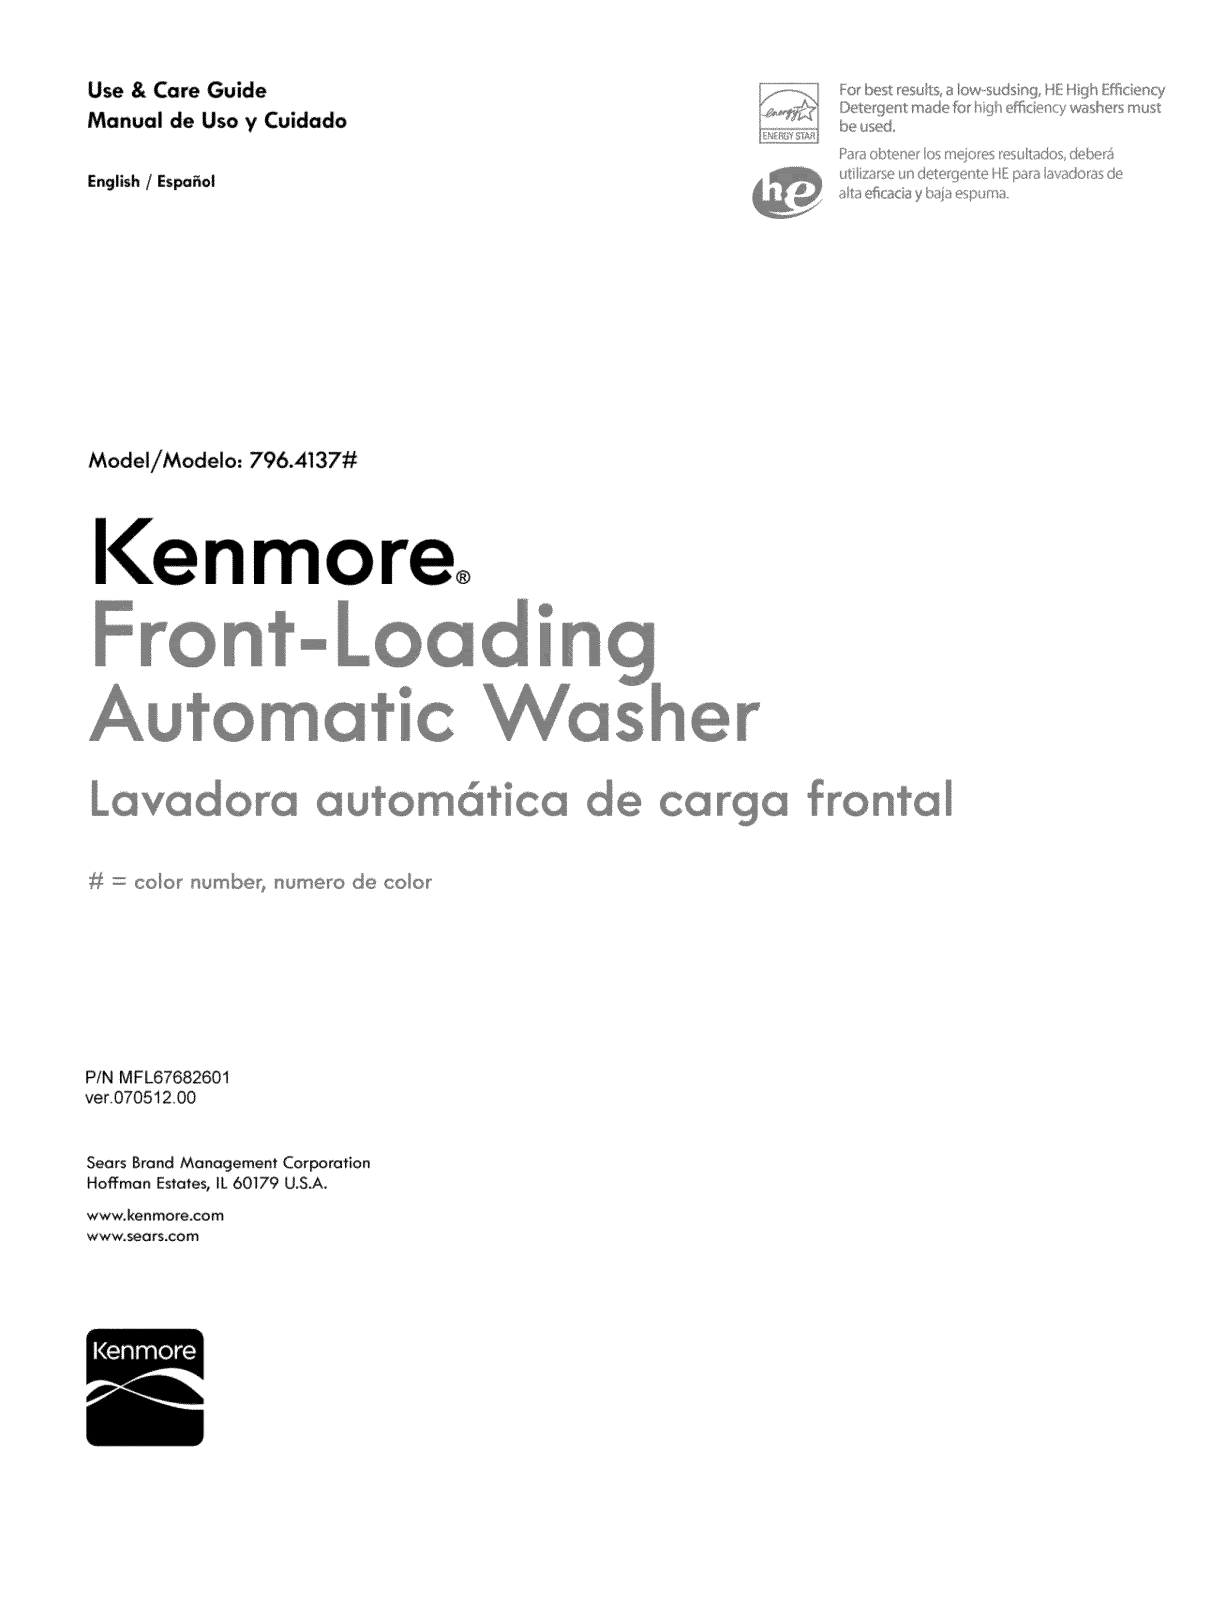 Kenmore 79641373210, 79641373211, 79641379211 Owner’s Manual